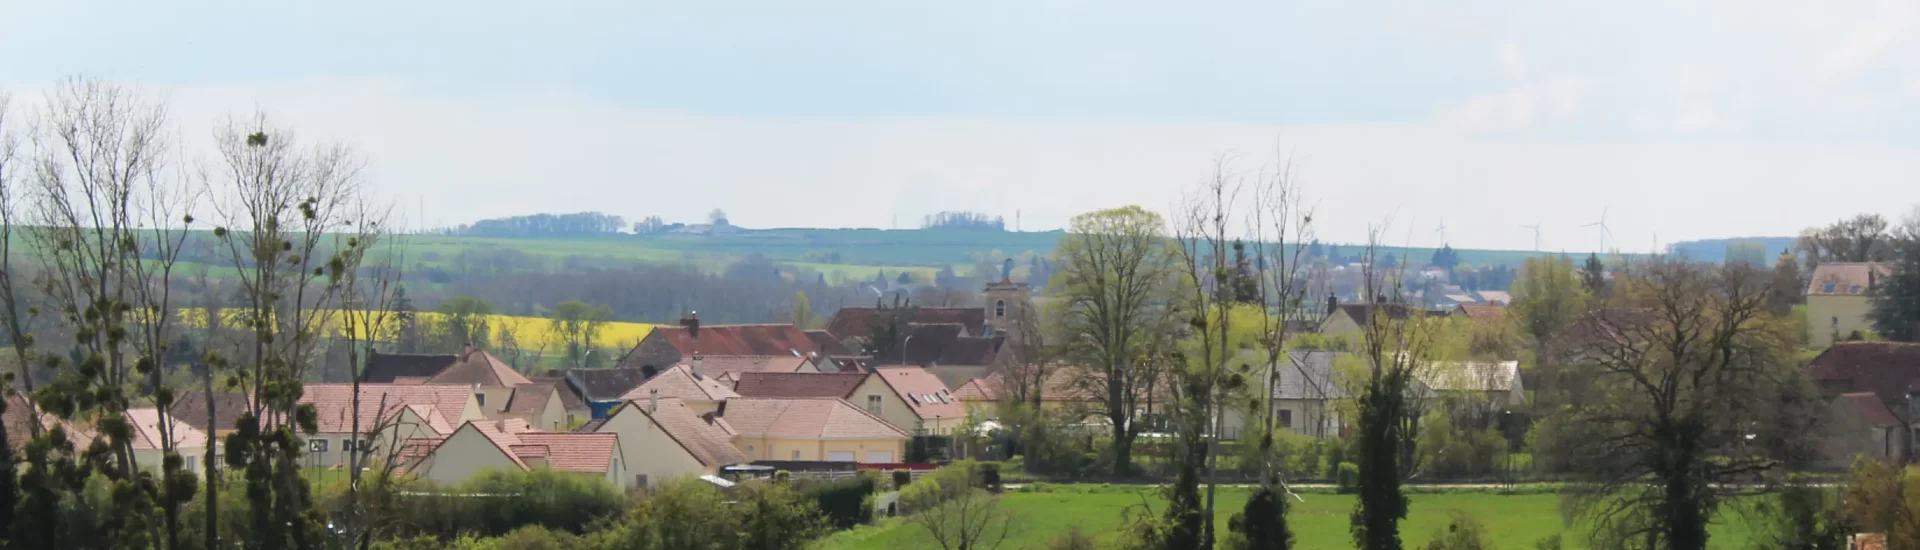 Le patrimoine de Villefargeau, commune de l'Yonne